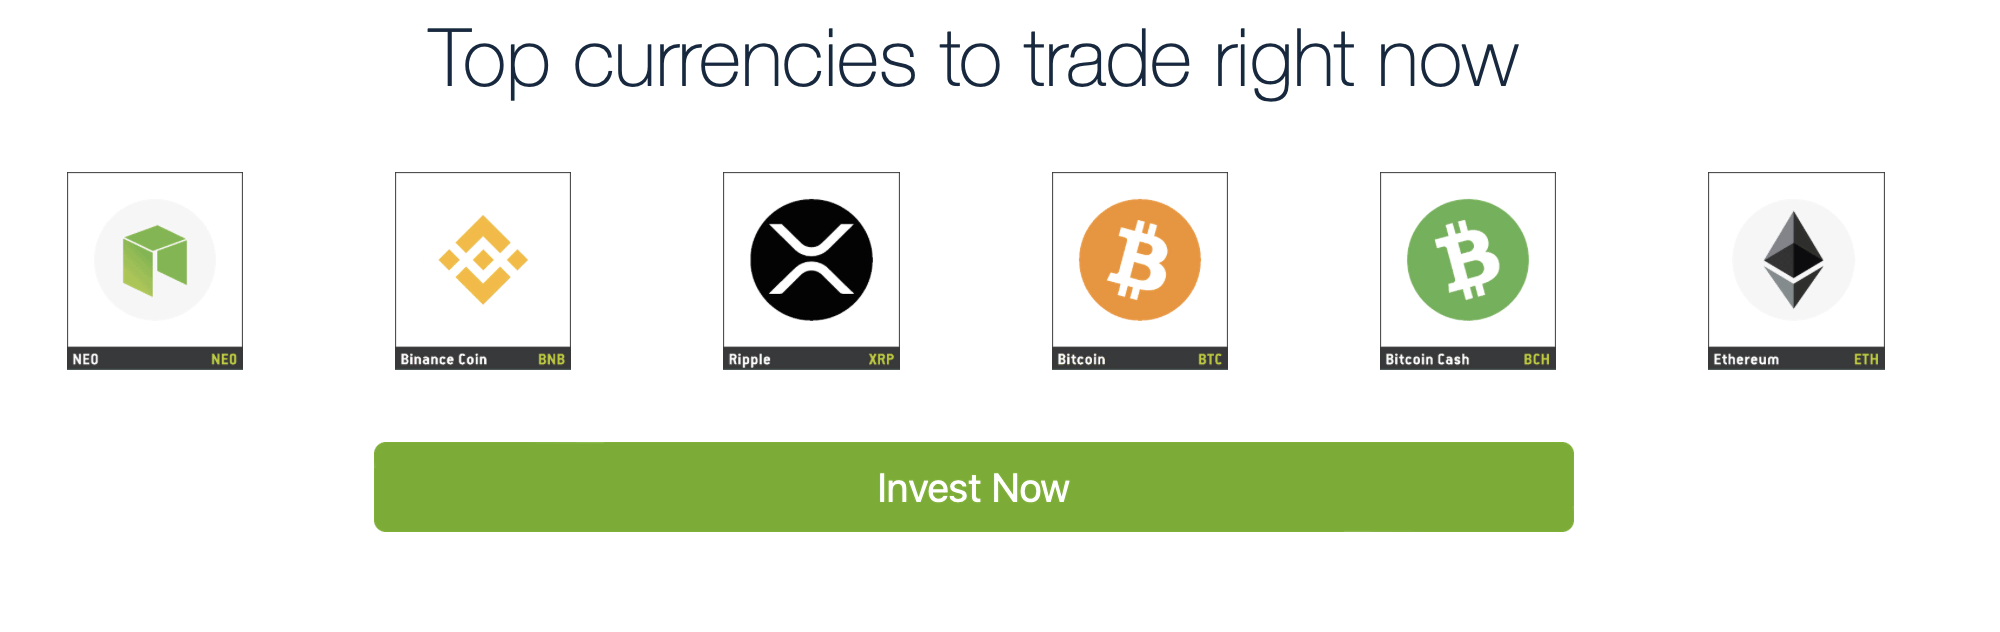 Verhandelbare cryptocurrencies op Bitcoin Pro